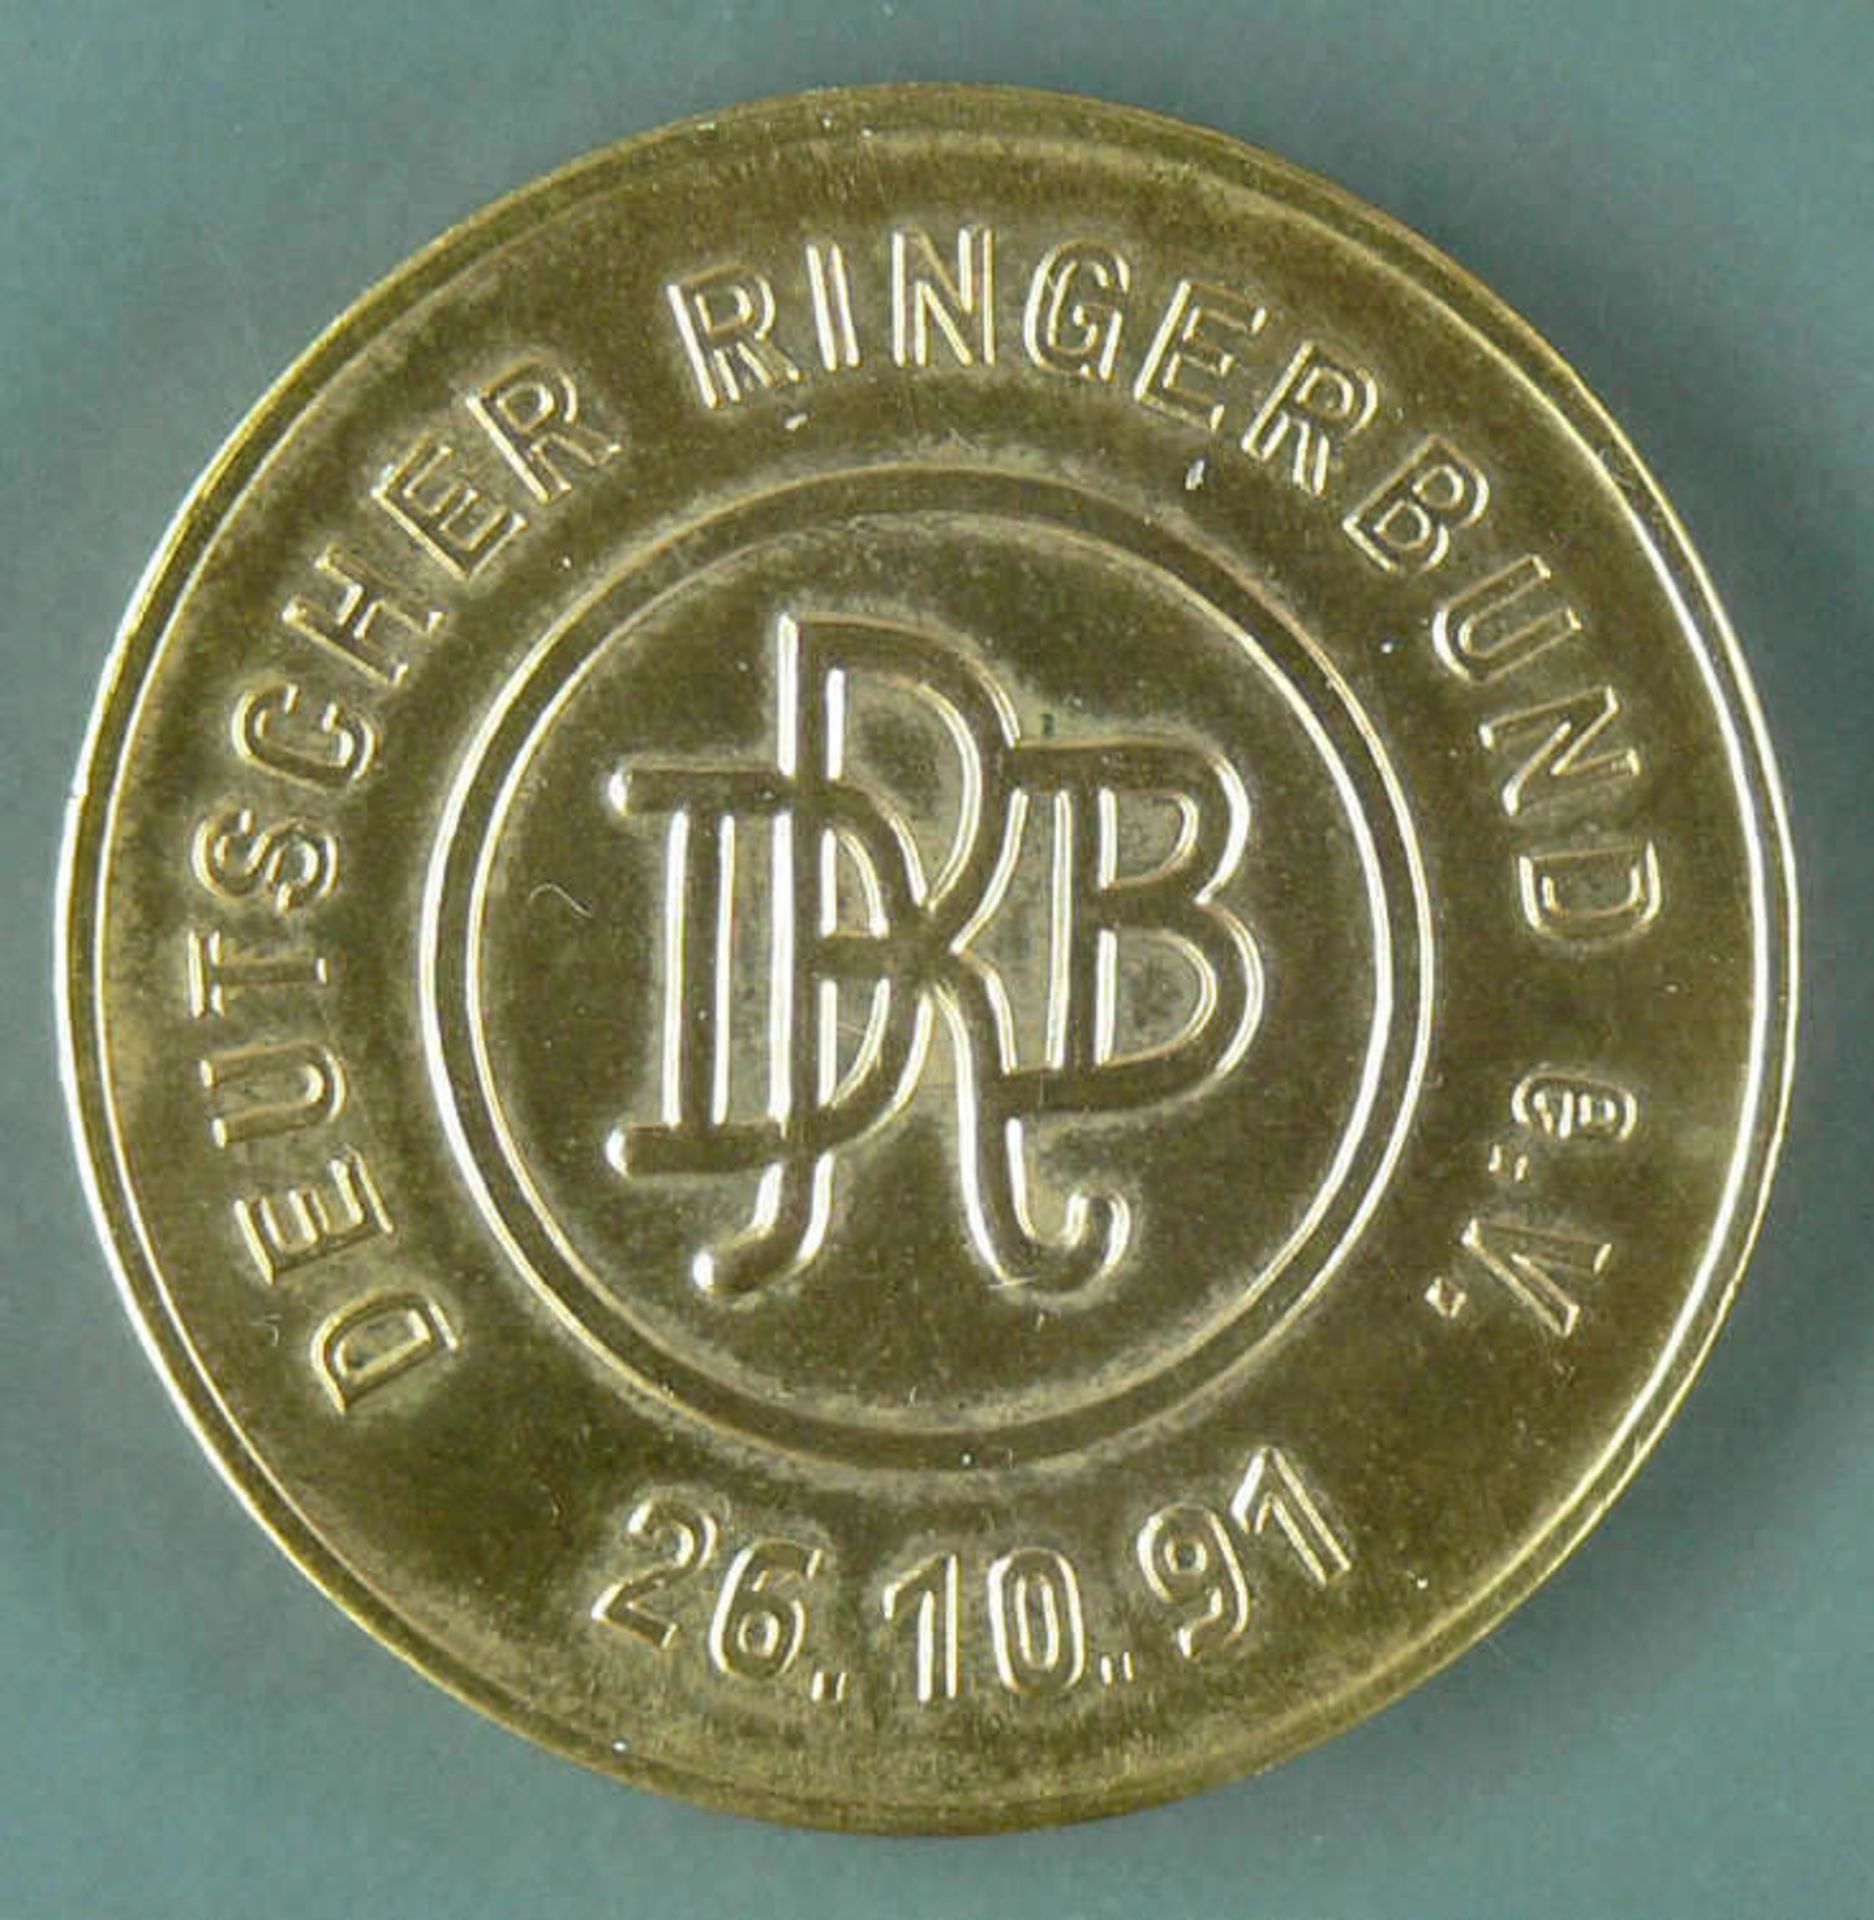 Medaille "Deutscher Ringerbund e.V. 26.10.91". Durchmesser: ca. 35,2 mm. Gewicht: ca. 31.1 g. Silber